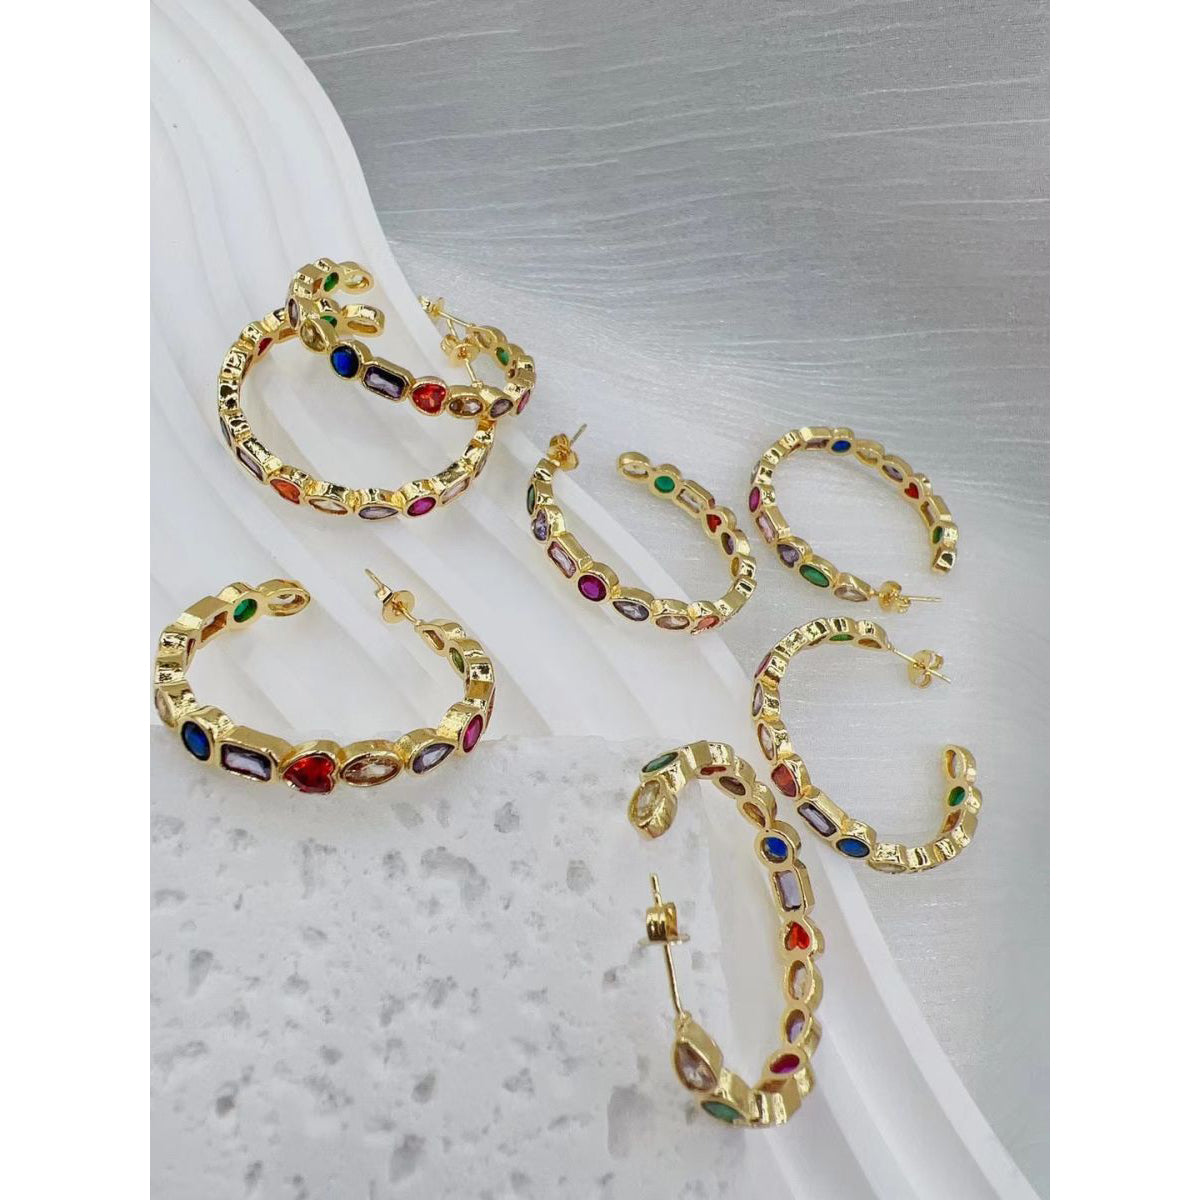 Buy Ishhaara Coloure Royal Blue Triple Hoop Earrings For Women And Girls | Hoop  Earrings | Fancy Hoop Earrings | ISH-T57 at Amazon.in